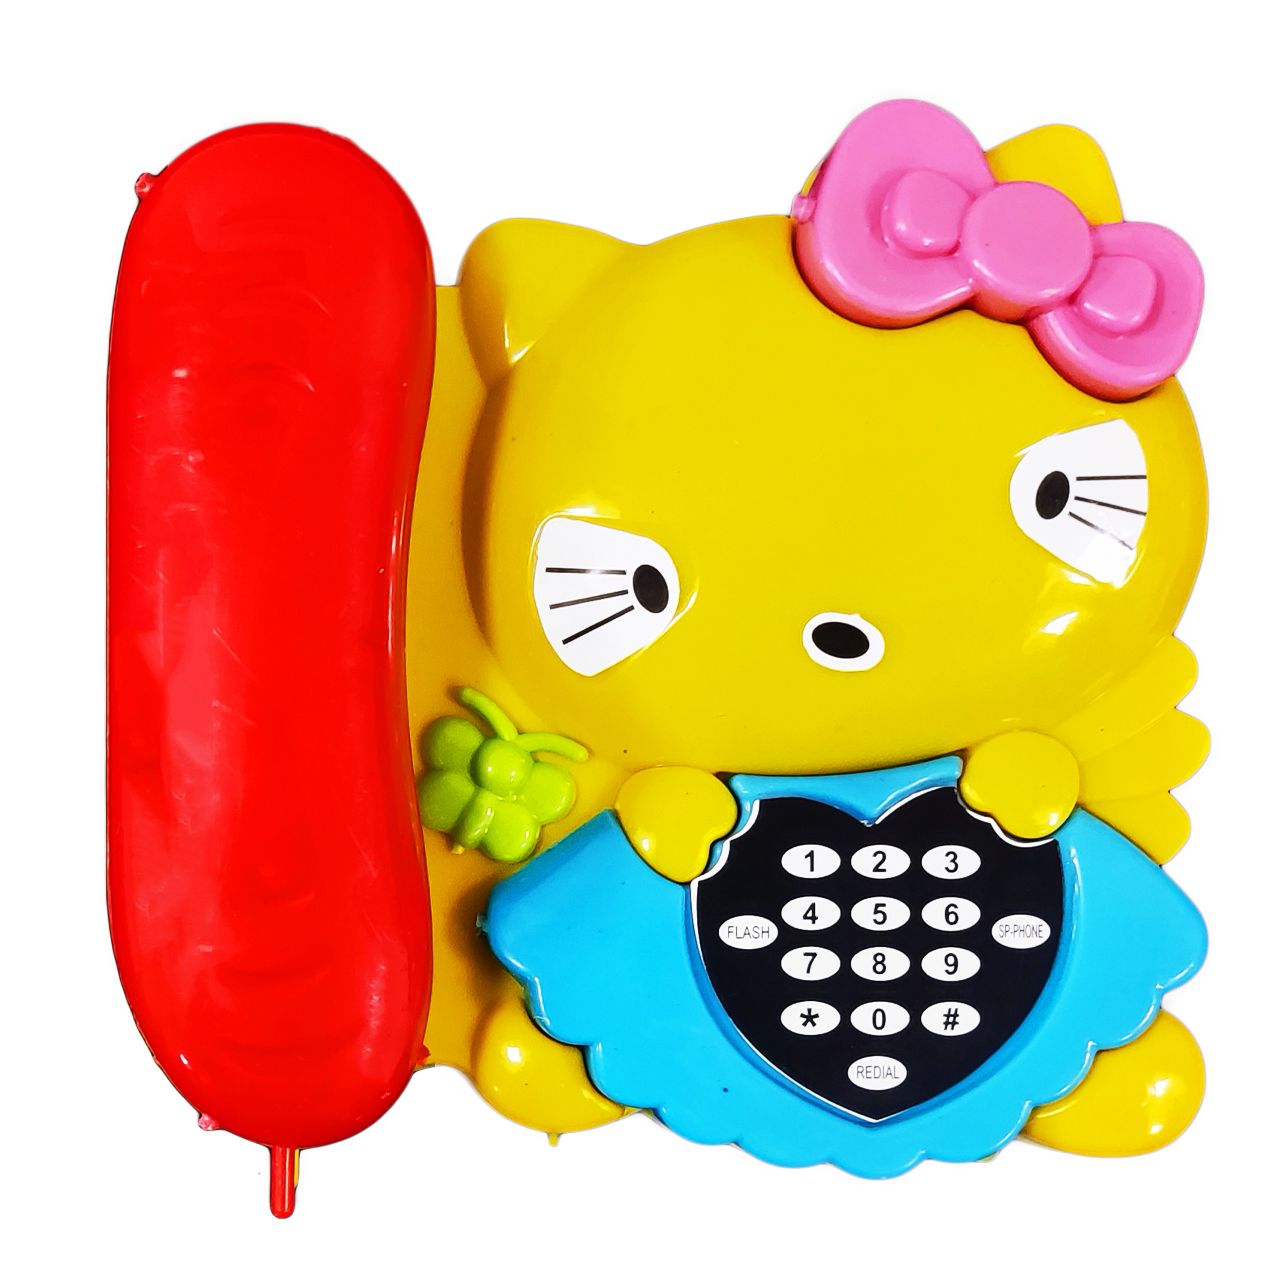 اسباب بازی مدل تلفن کیتی کد 9856 -  - 1